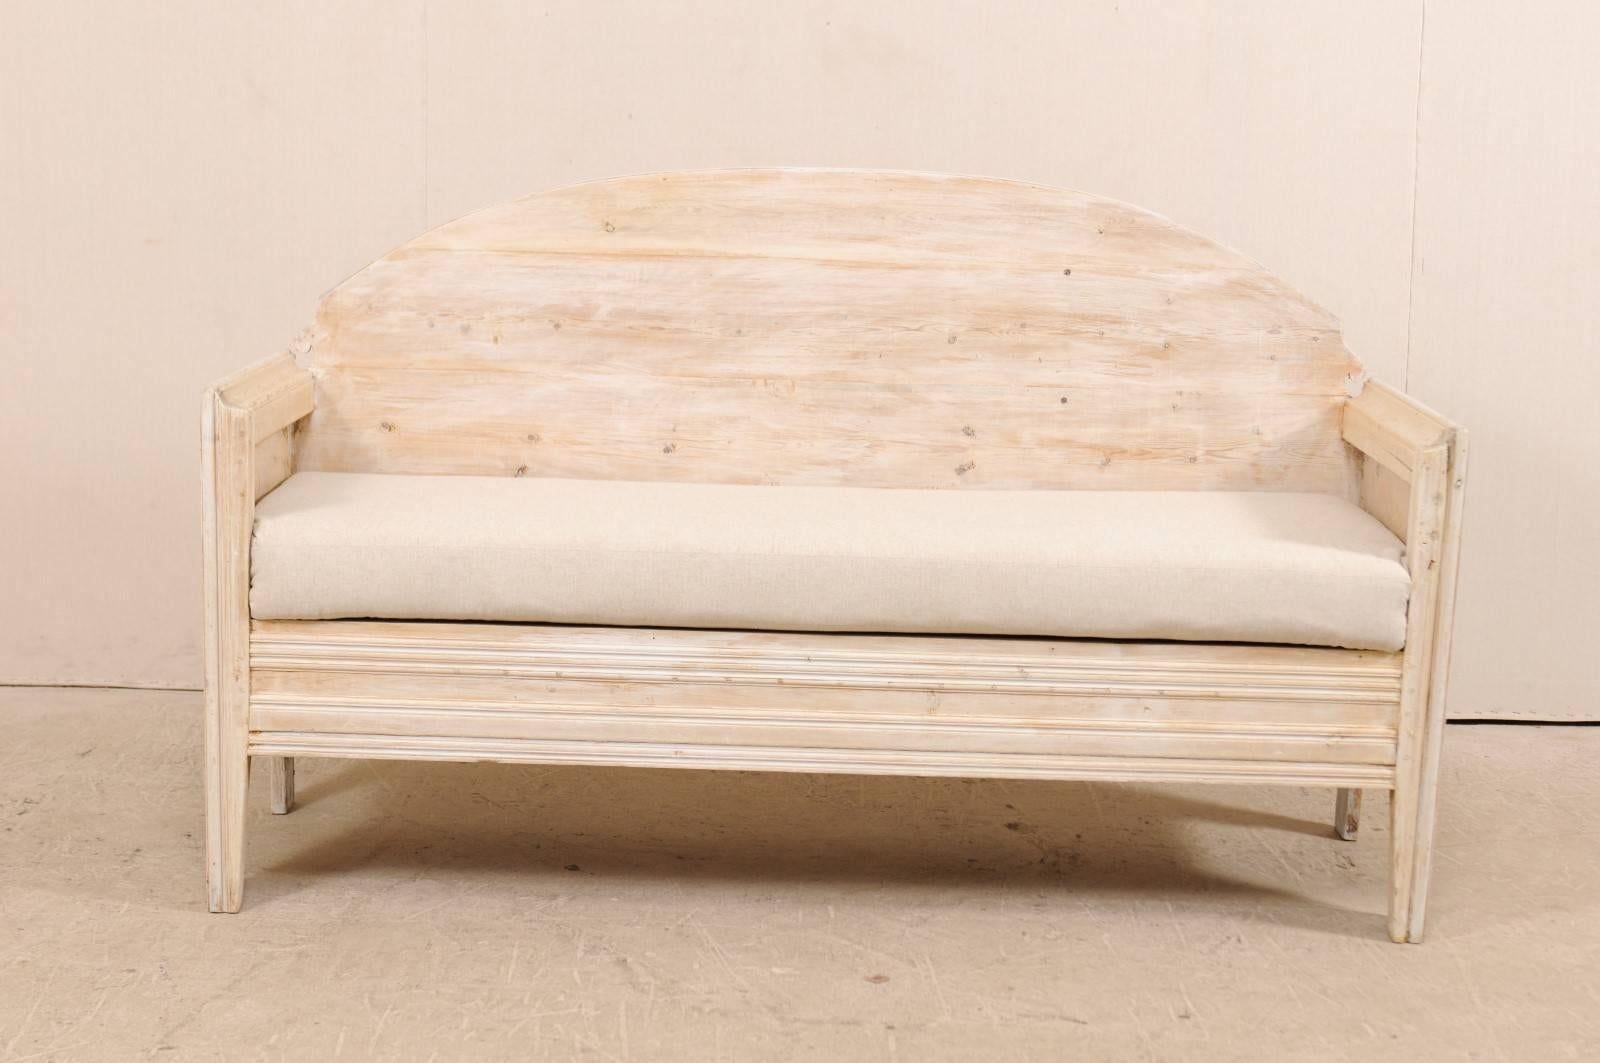 Eine schwedische Sofabank aus dem frühen 19. Jahrhundert. Dieses antike schwedische Holzsofa hat eine schön gewölbte Rückenlehne mit dekorativen Aussparungen an jeder Ecke, hohe Armlehnen und klare lineare Linien auf der Vorderseite des Sofas. Diese